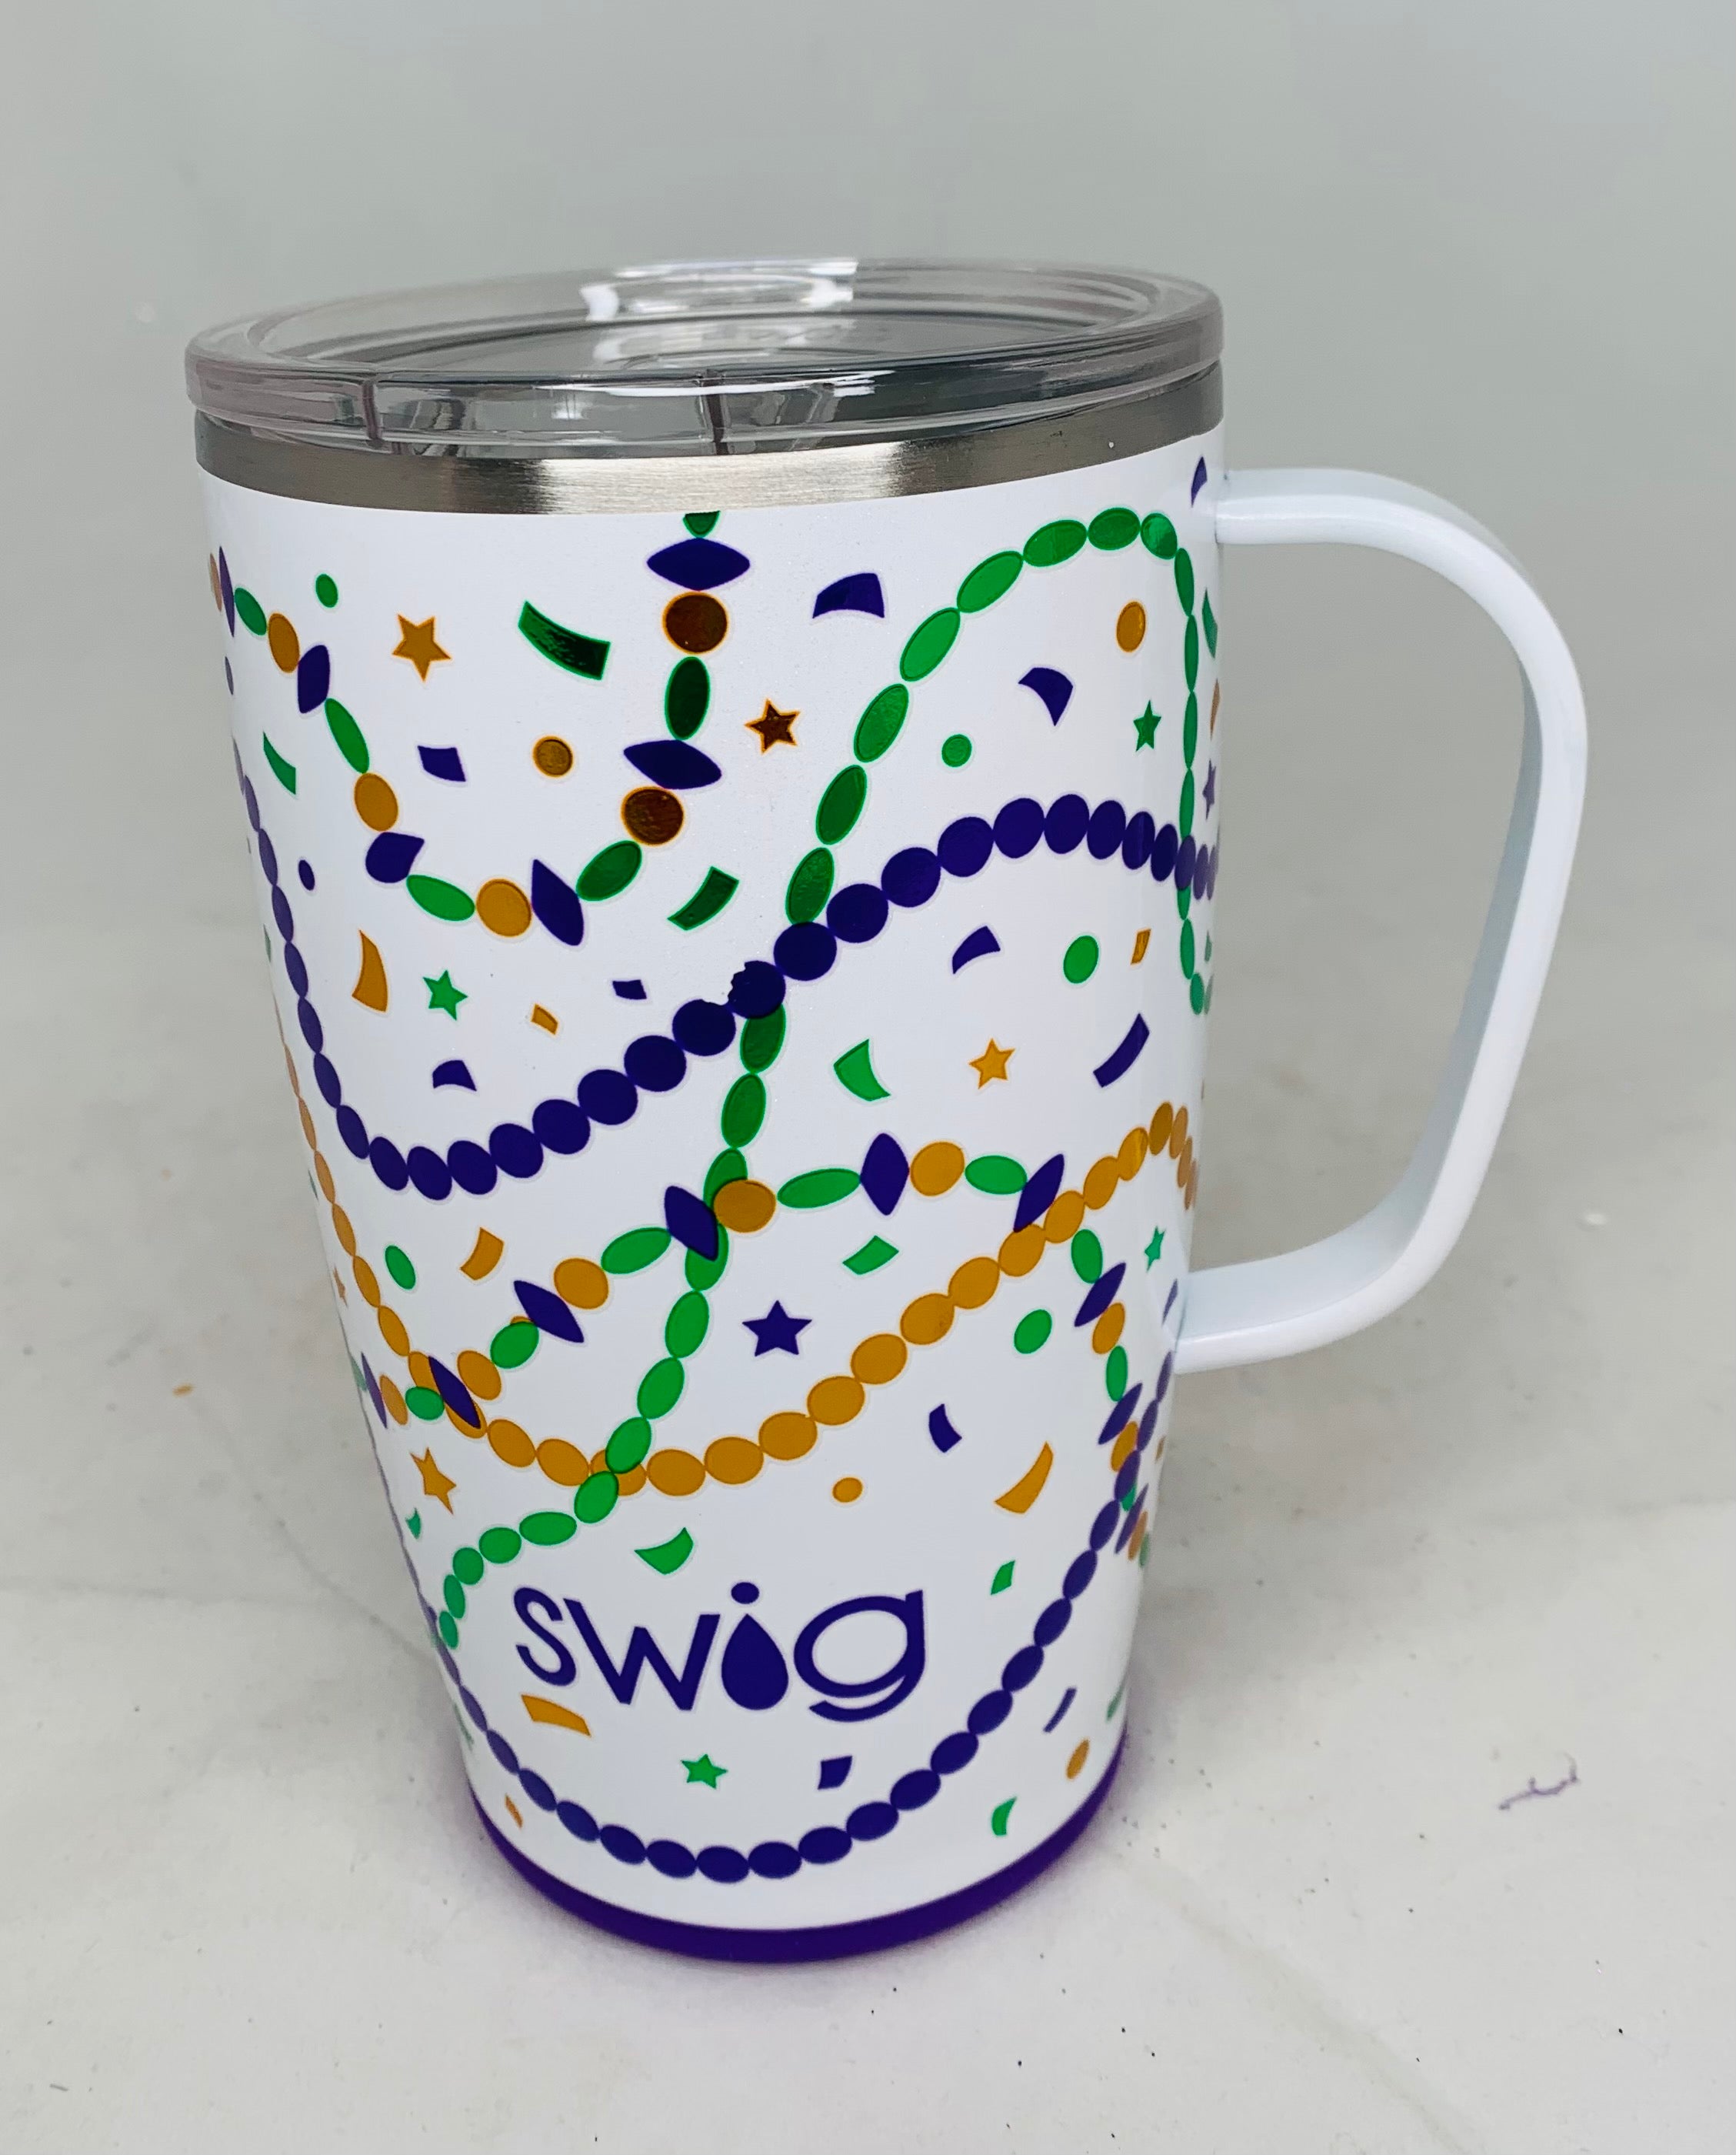 Swig 18 oz Travel Mug Calypso